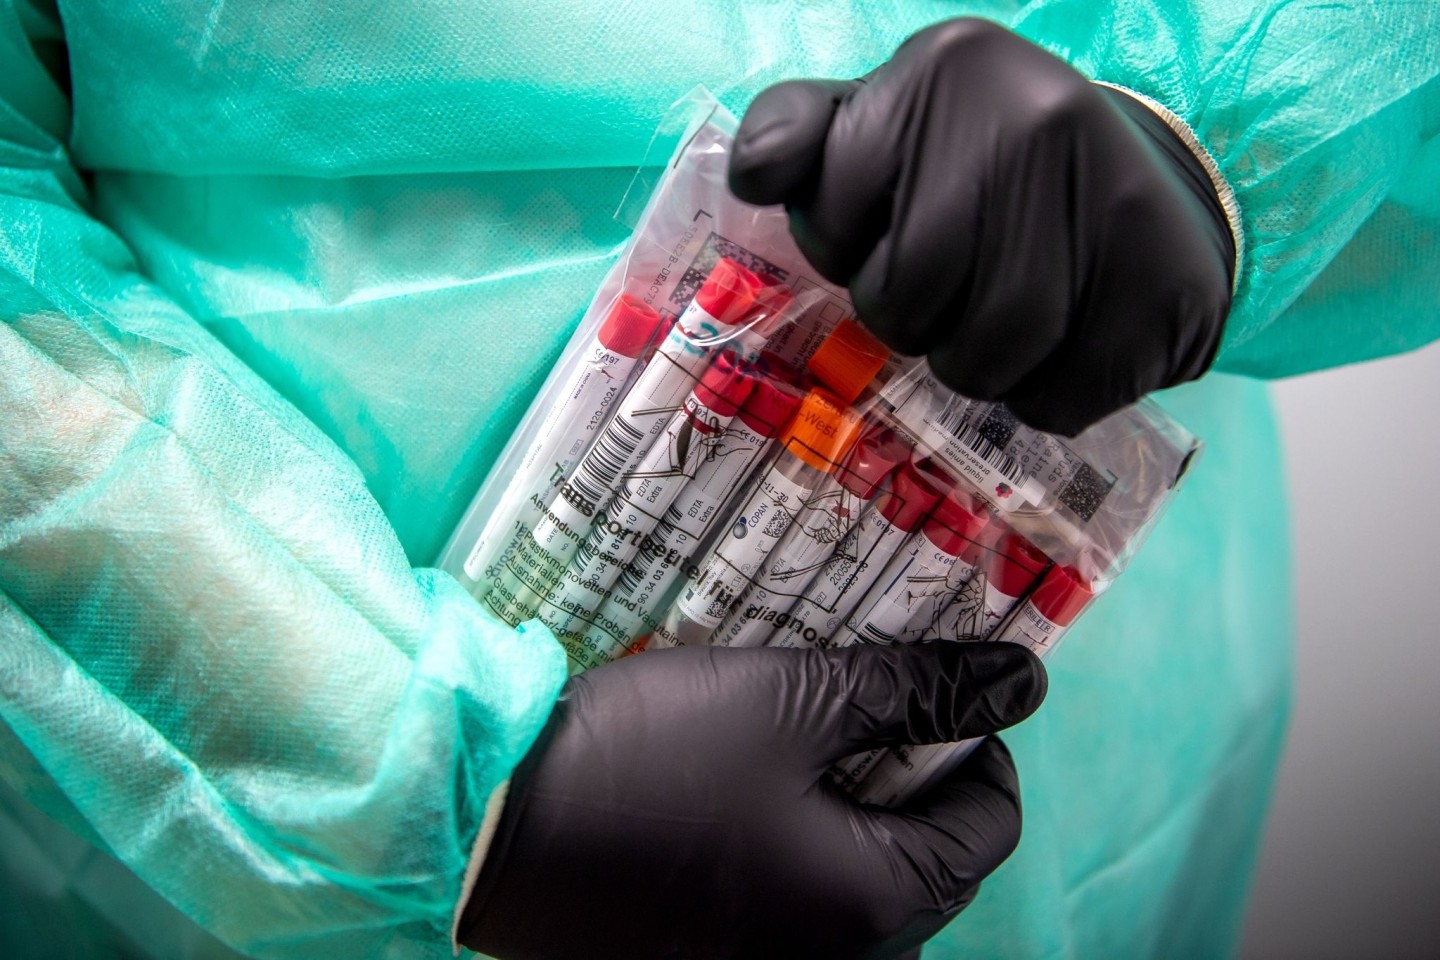 Proben für einen PCR-Test werden von einem Mitarbeiter im Corona-Testzentrum verpackt. (Archivbild)